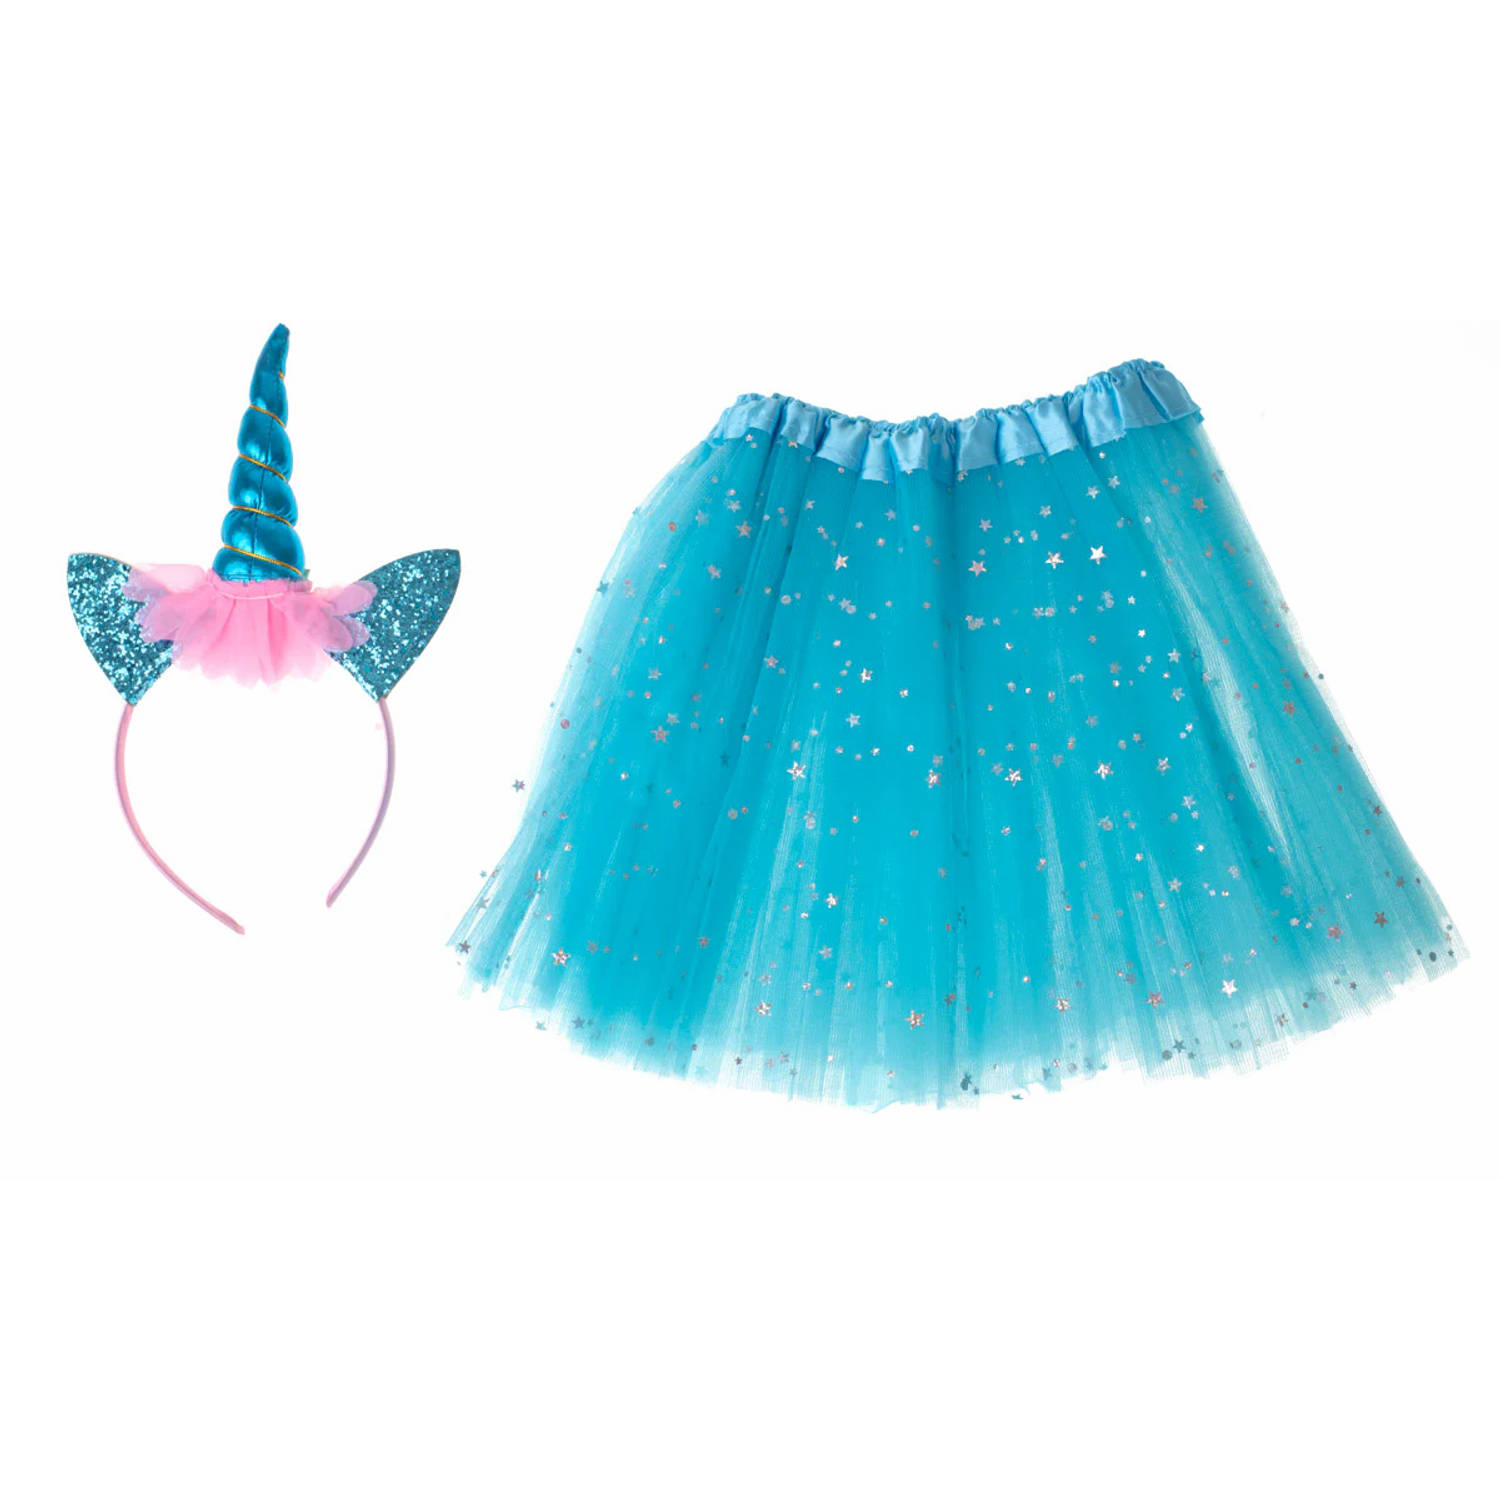 Kinder verkleedkleren / carnaval outfit unicorn glitters met tutu blauw - Verkeedset voor kinderen - Met haarband en tutu